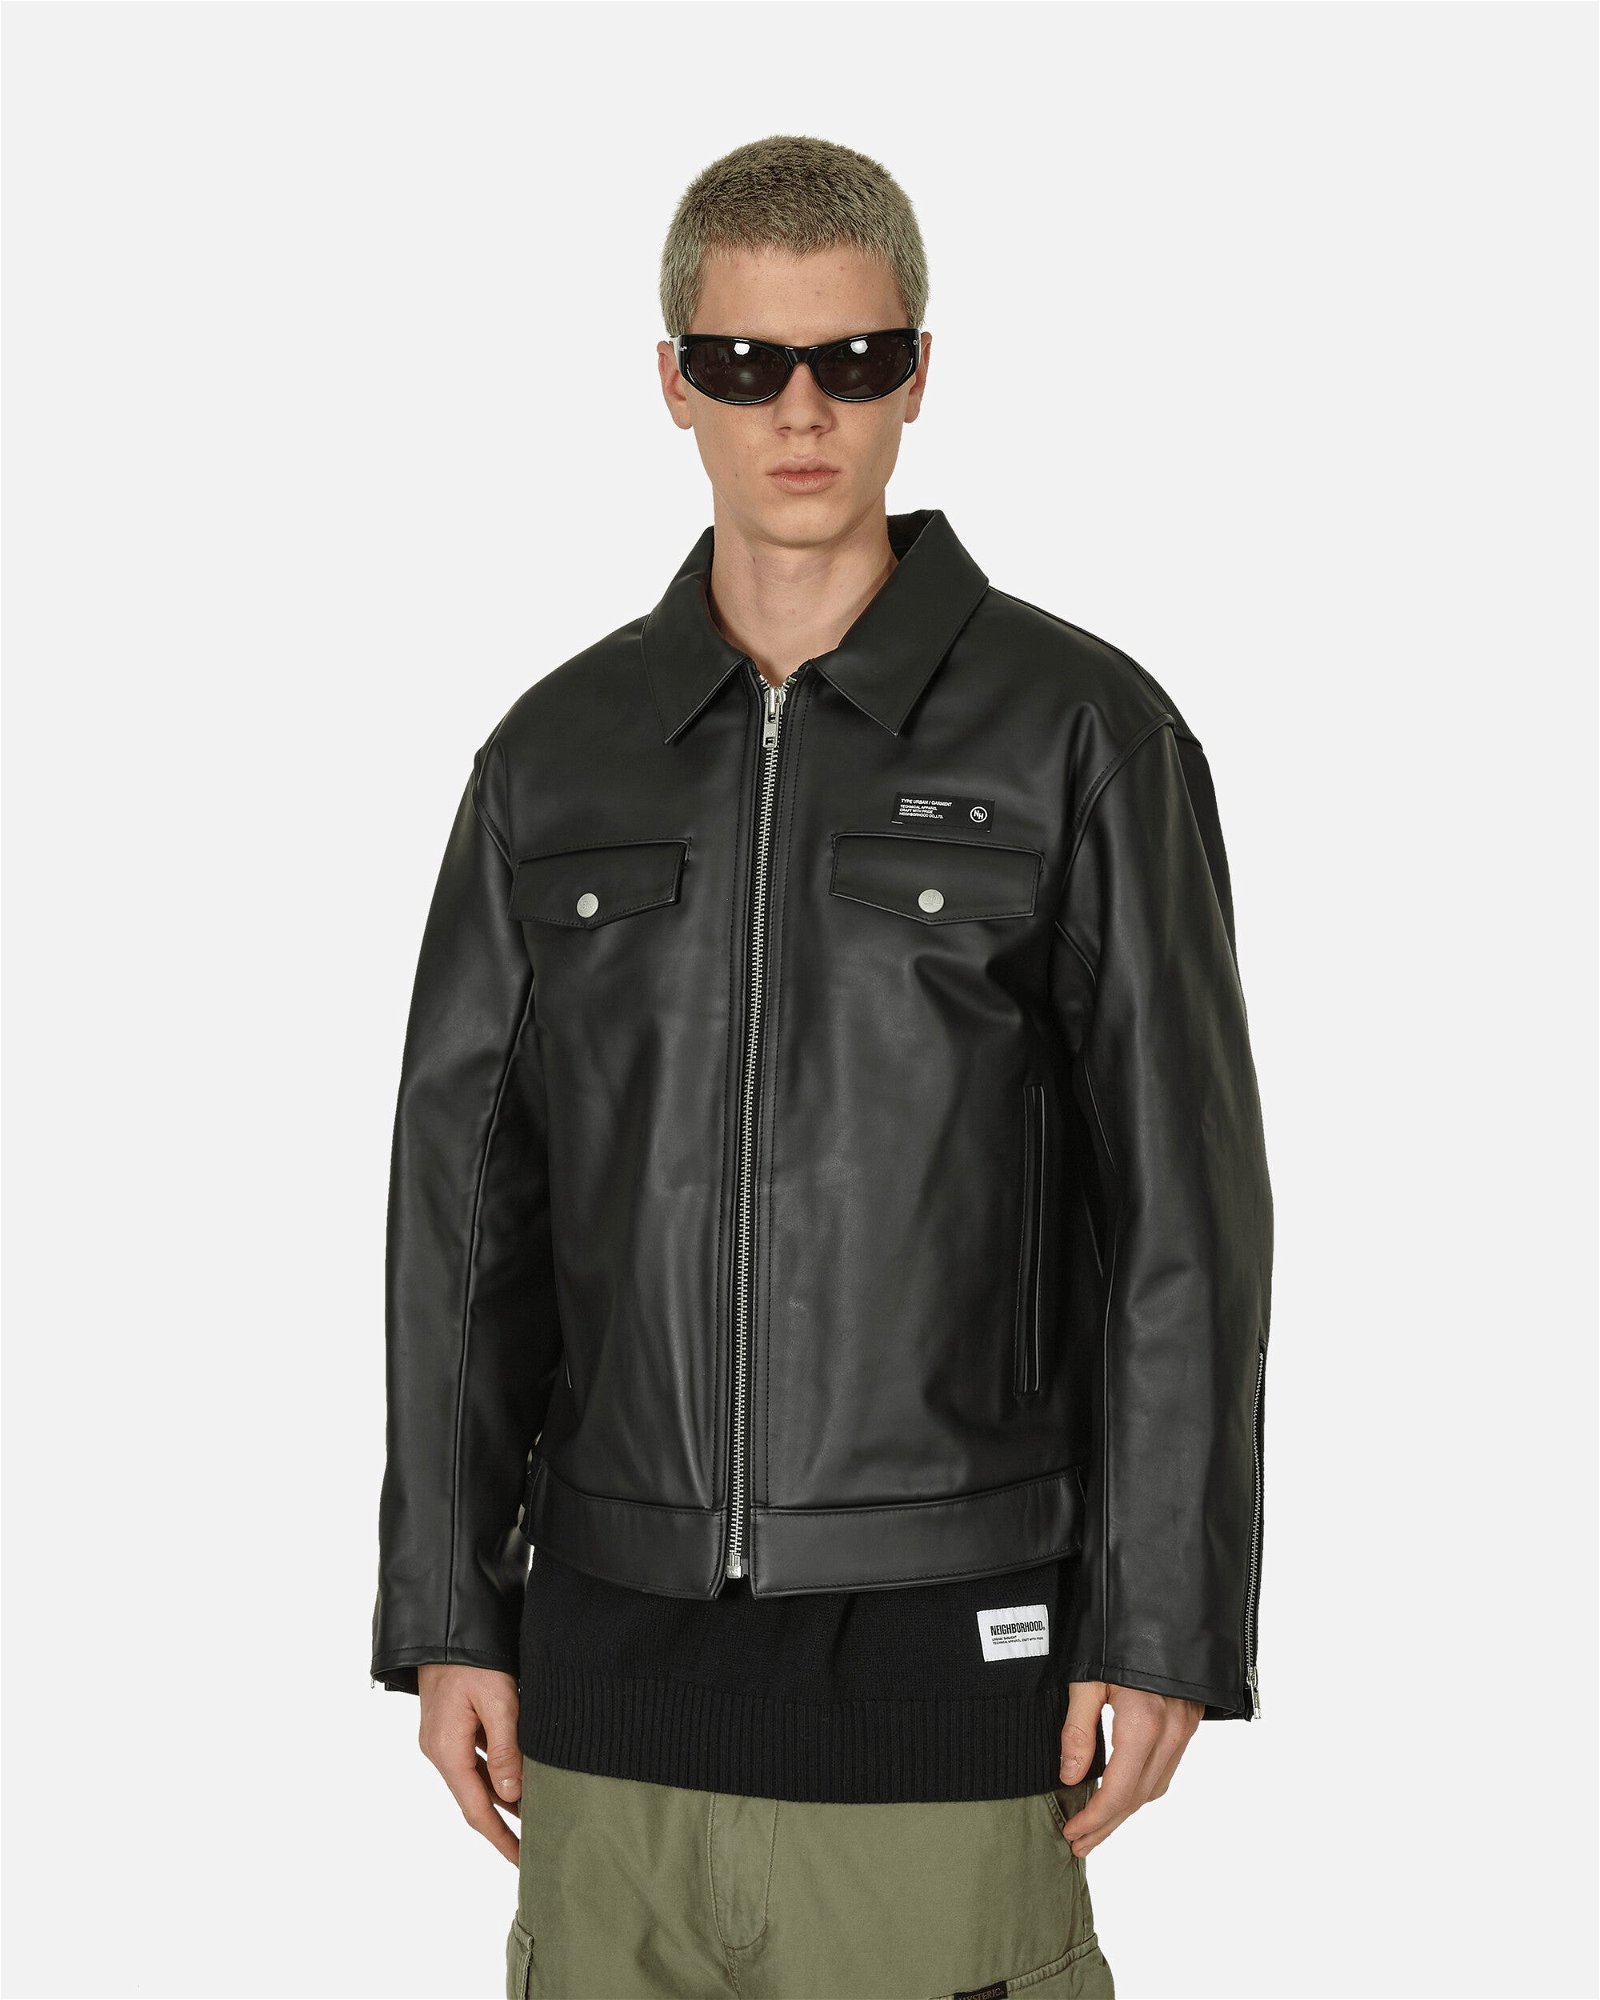 Jacket Neighborhood Single Leather Jacket 232SZNH-JKM01 BK | FLEXDOG